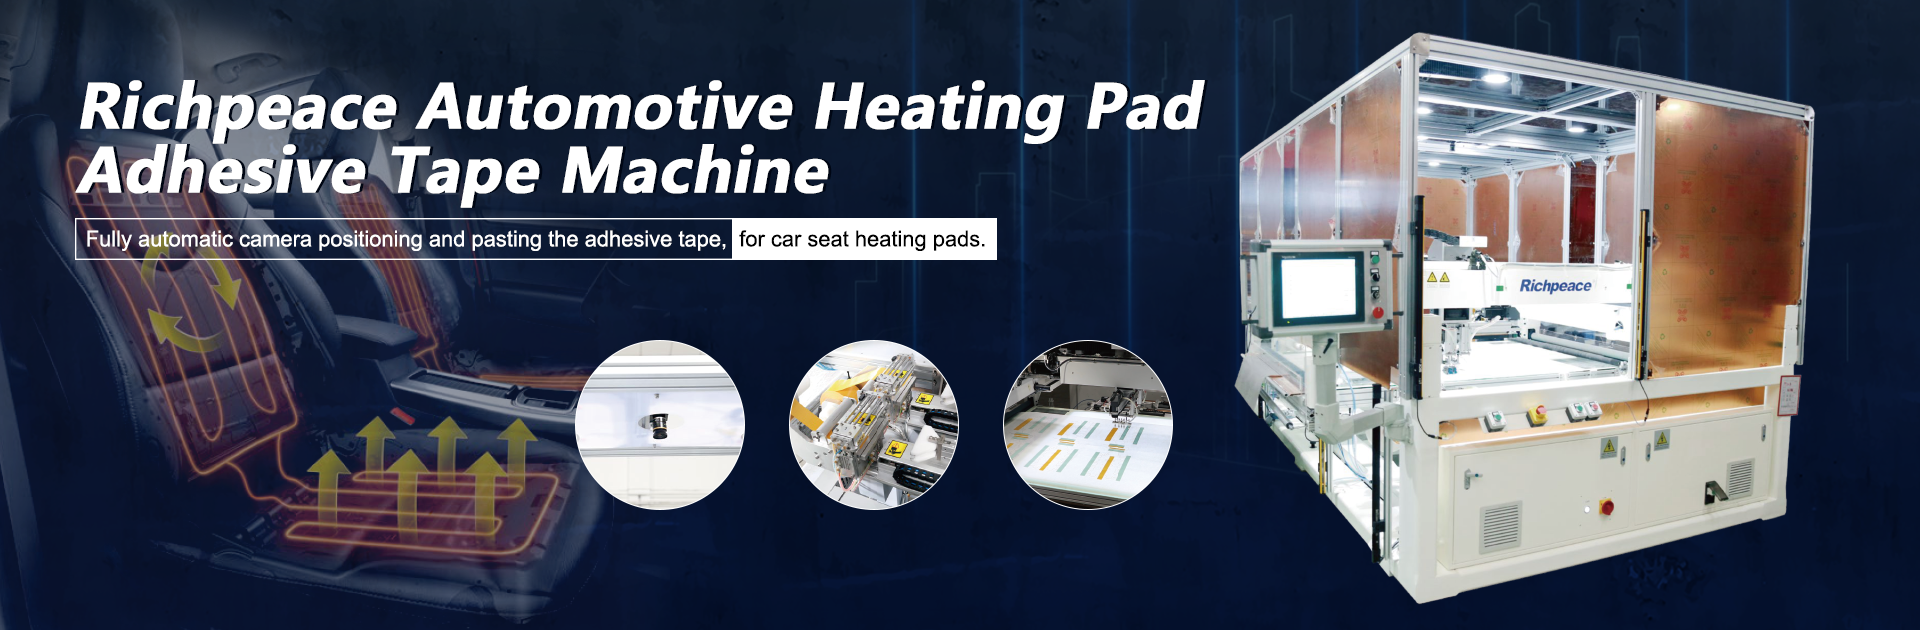 Richpeace Automotive Heating Pad Adhesive Tape Machine